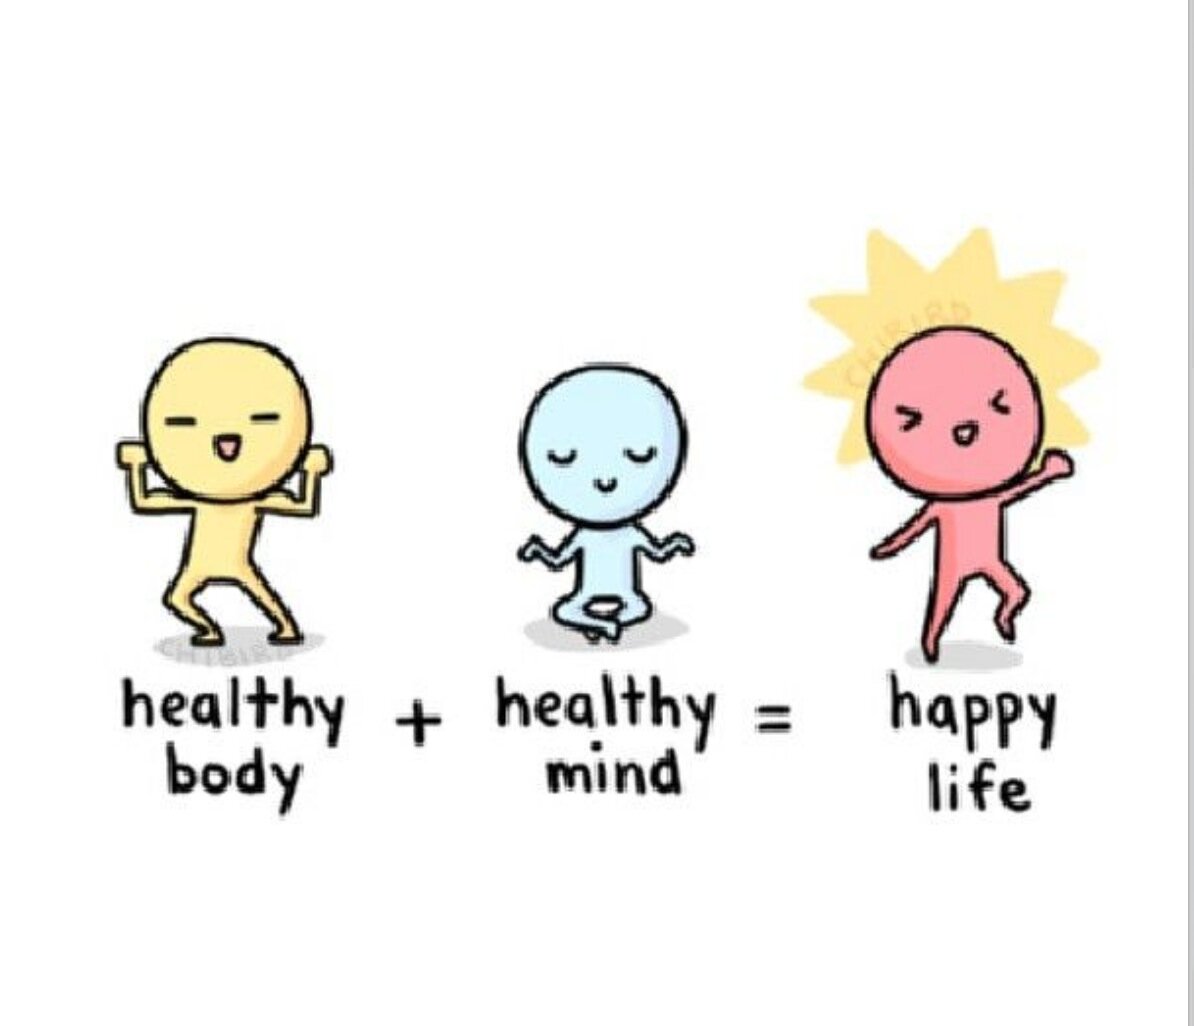 Medicina mente cuerpo, alimentación saludable, vida saludable, zen, mente sana y cuerpo sano. mindbodymedicine, healthy mind and body, healthy food, mindfulnes.